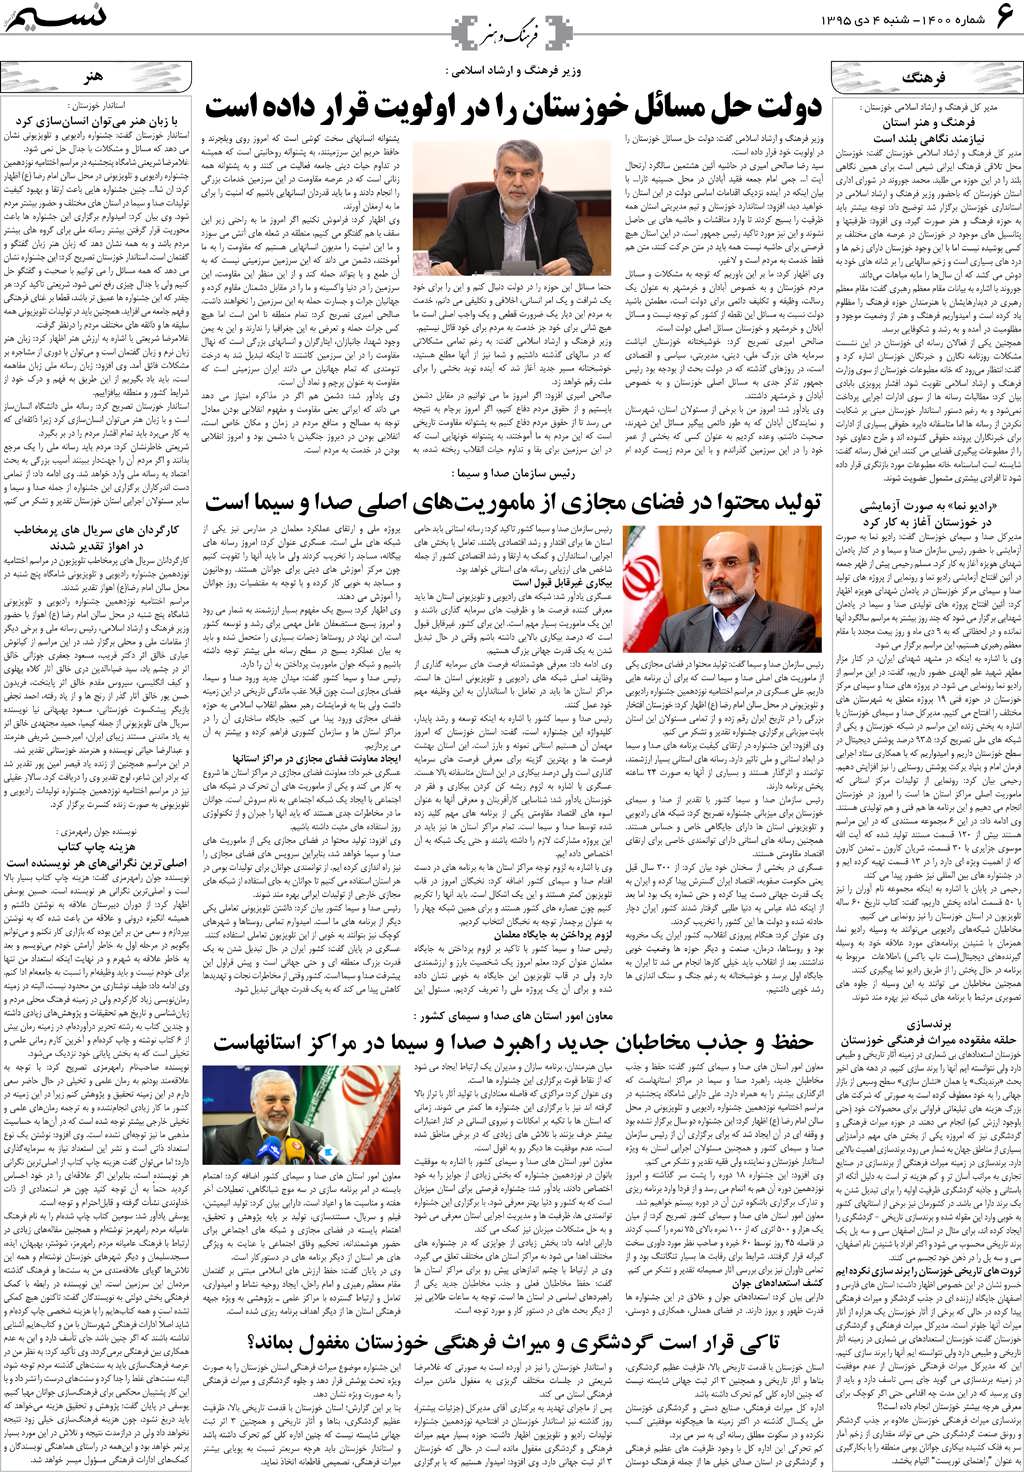 صفحه فرهنگ و هنر روزنامه نسیم شماره 1400